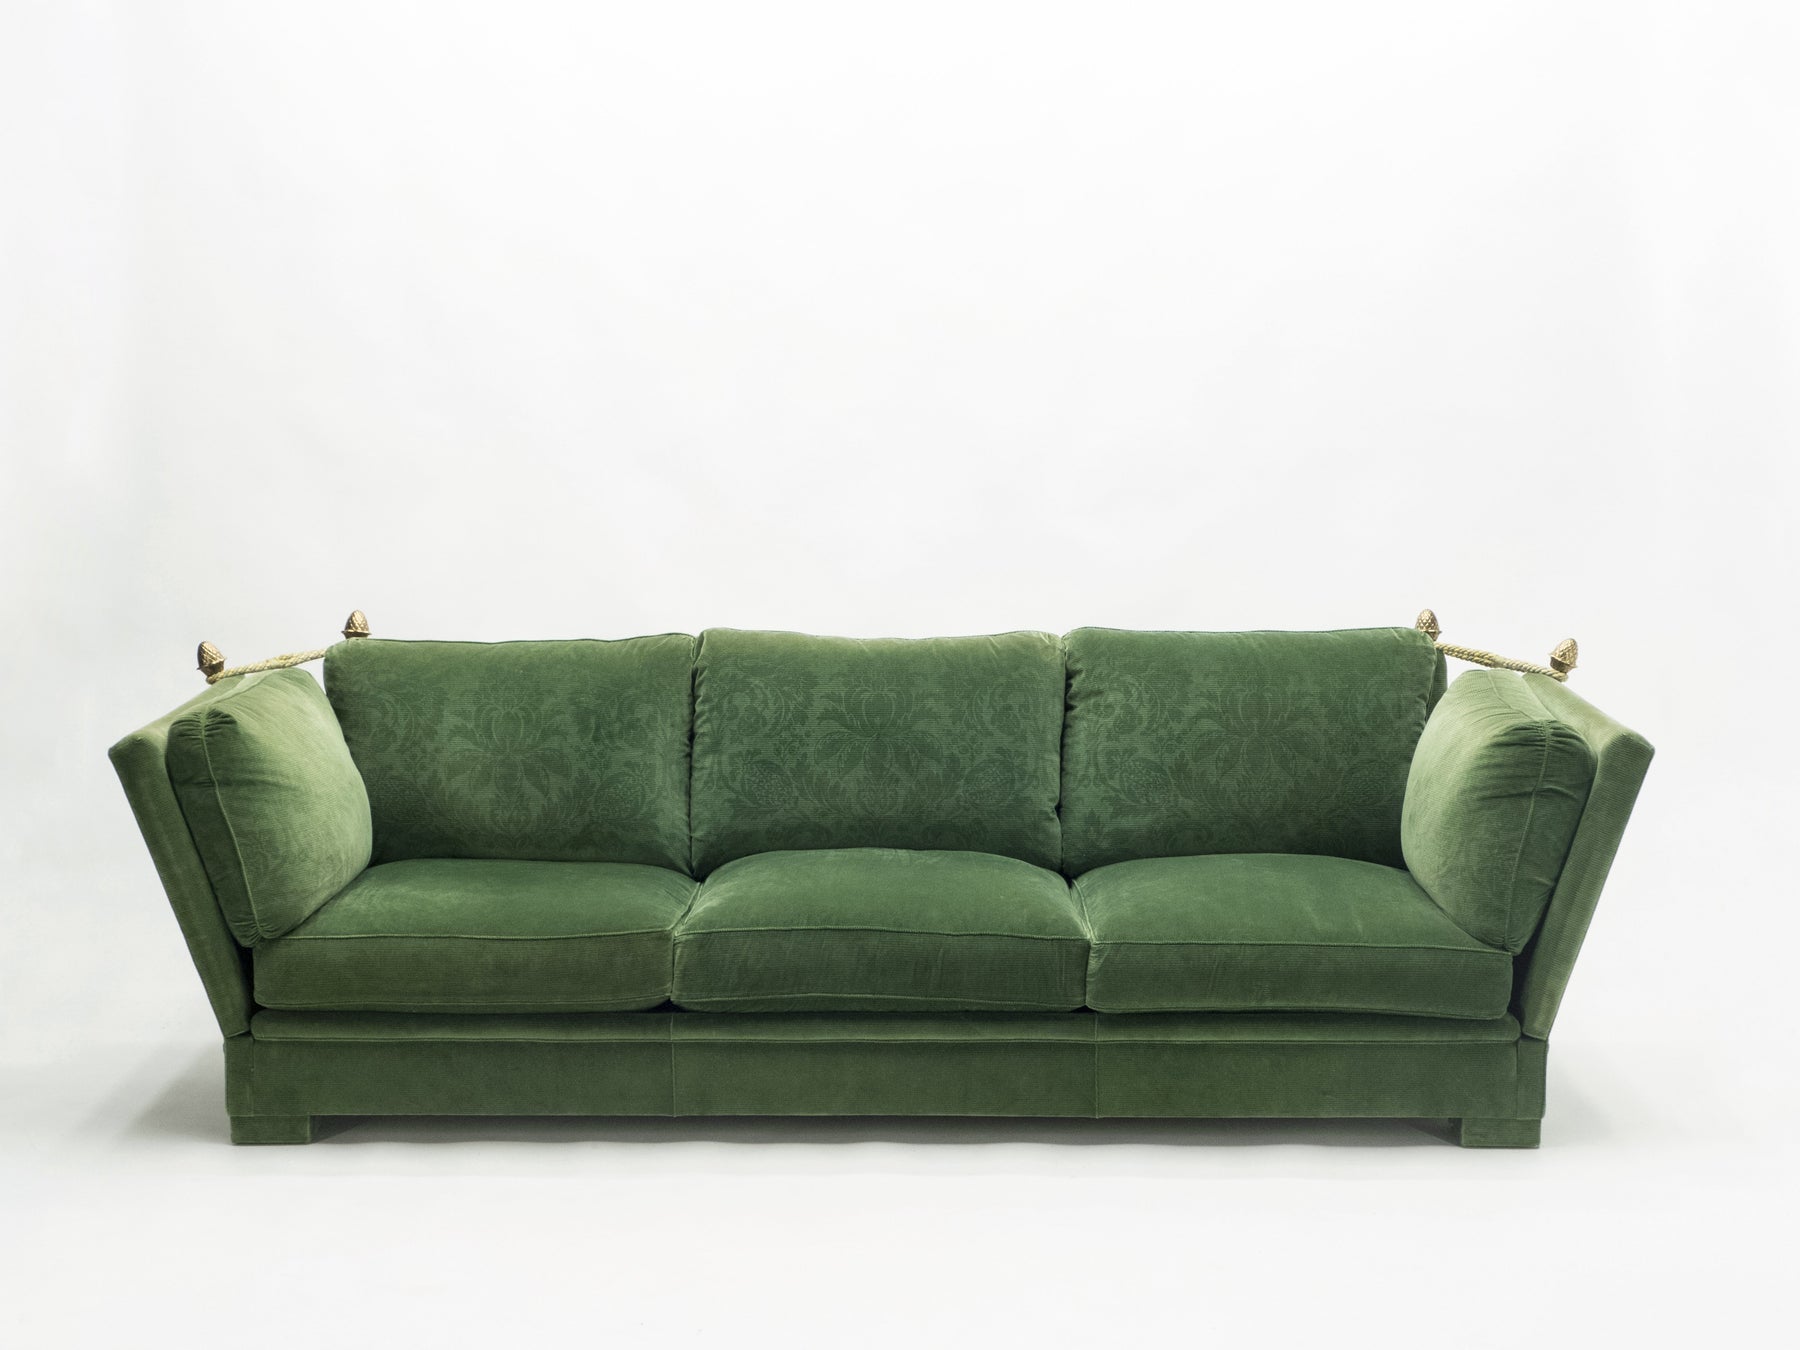 Pair of large Neoclassical Maison Jansen sofas original green velvet 1970s